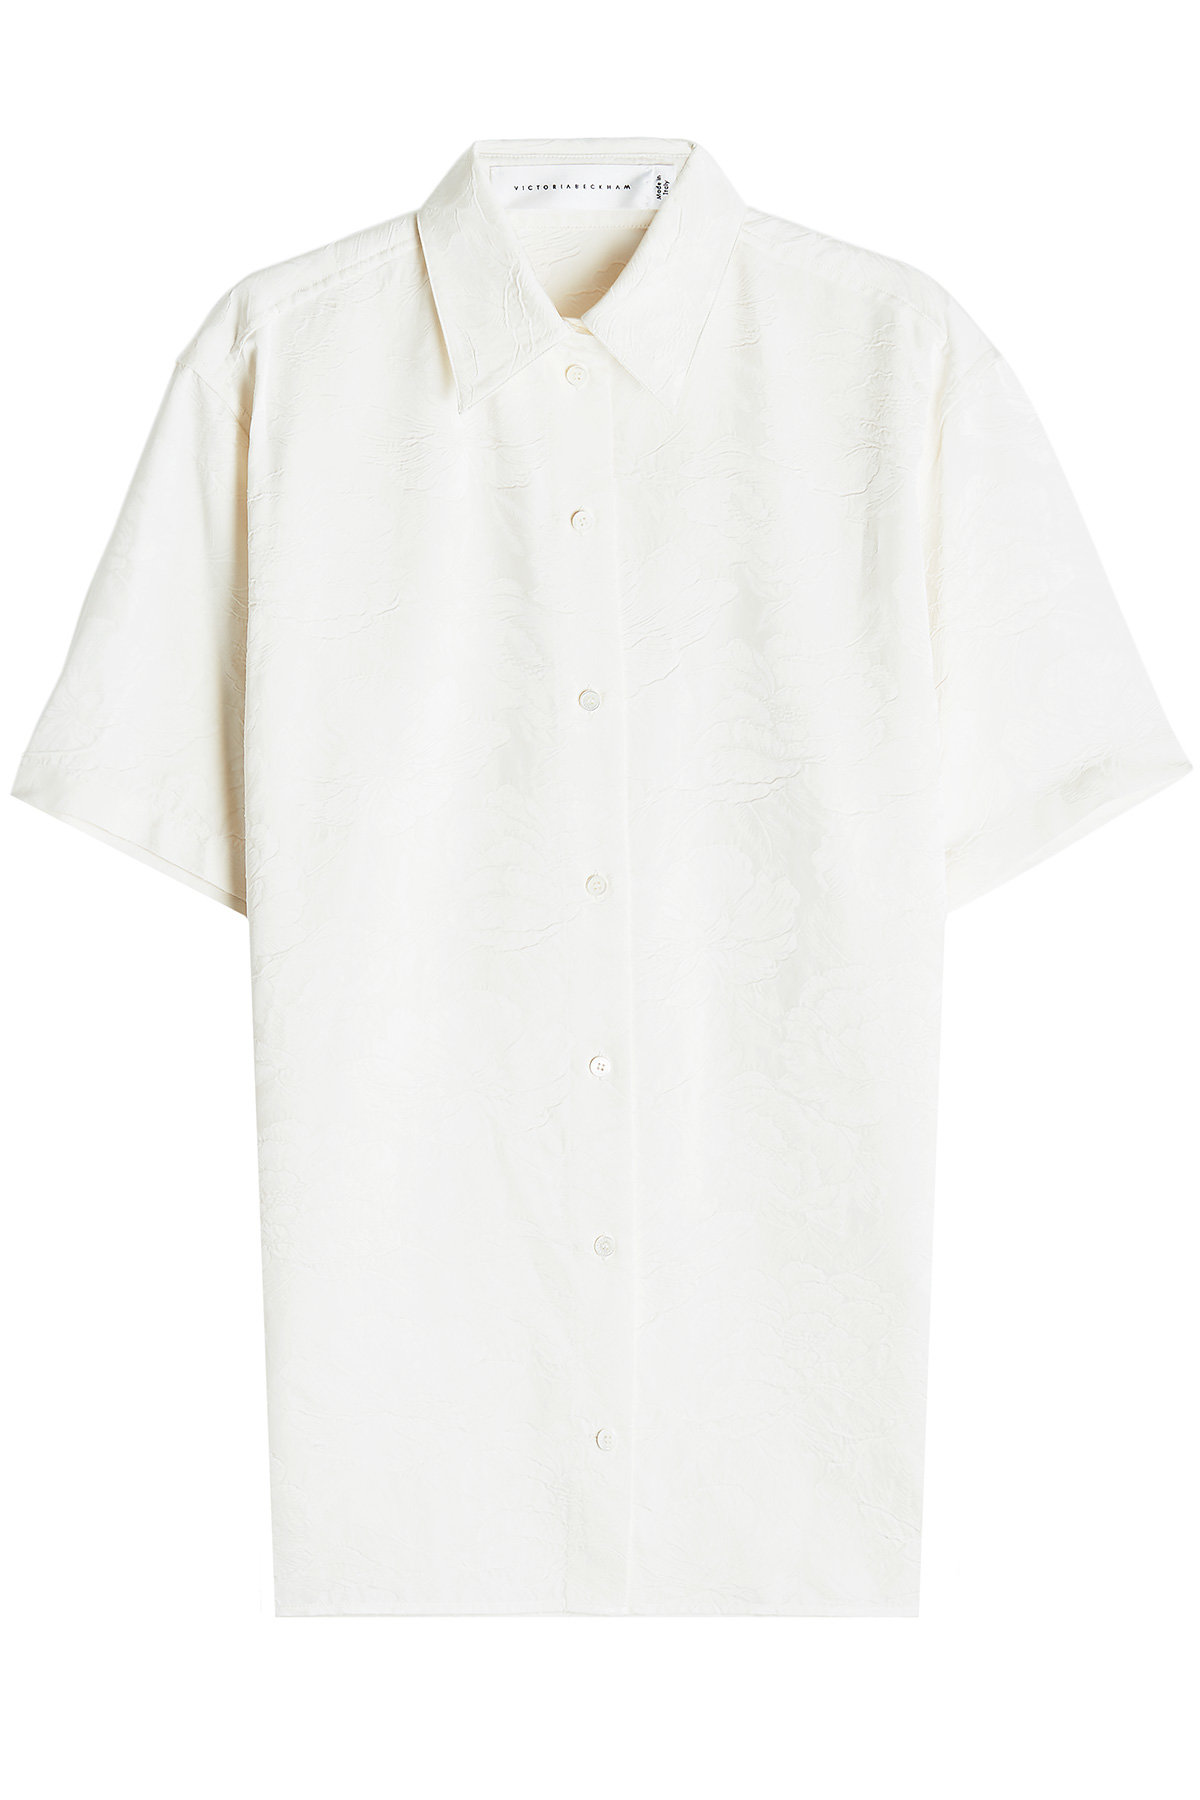 Victoria Beckham - Short Sleeve Shirt